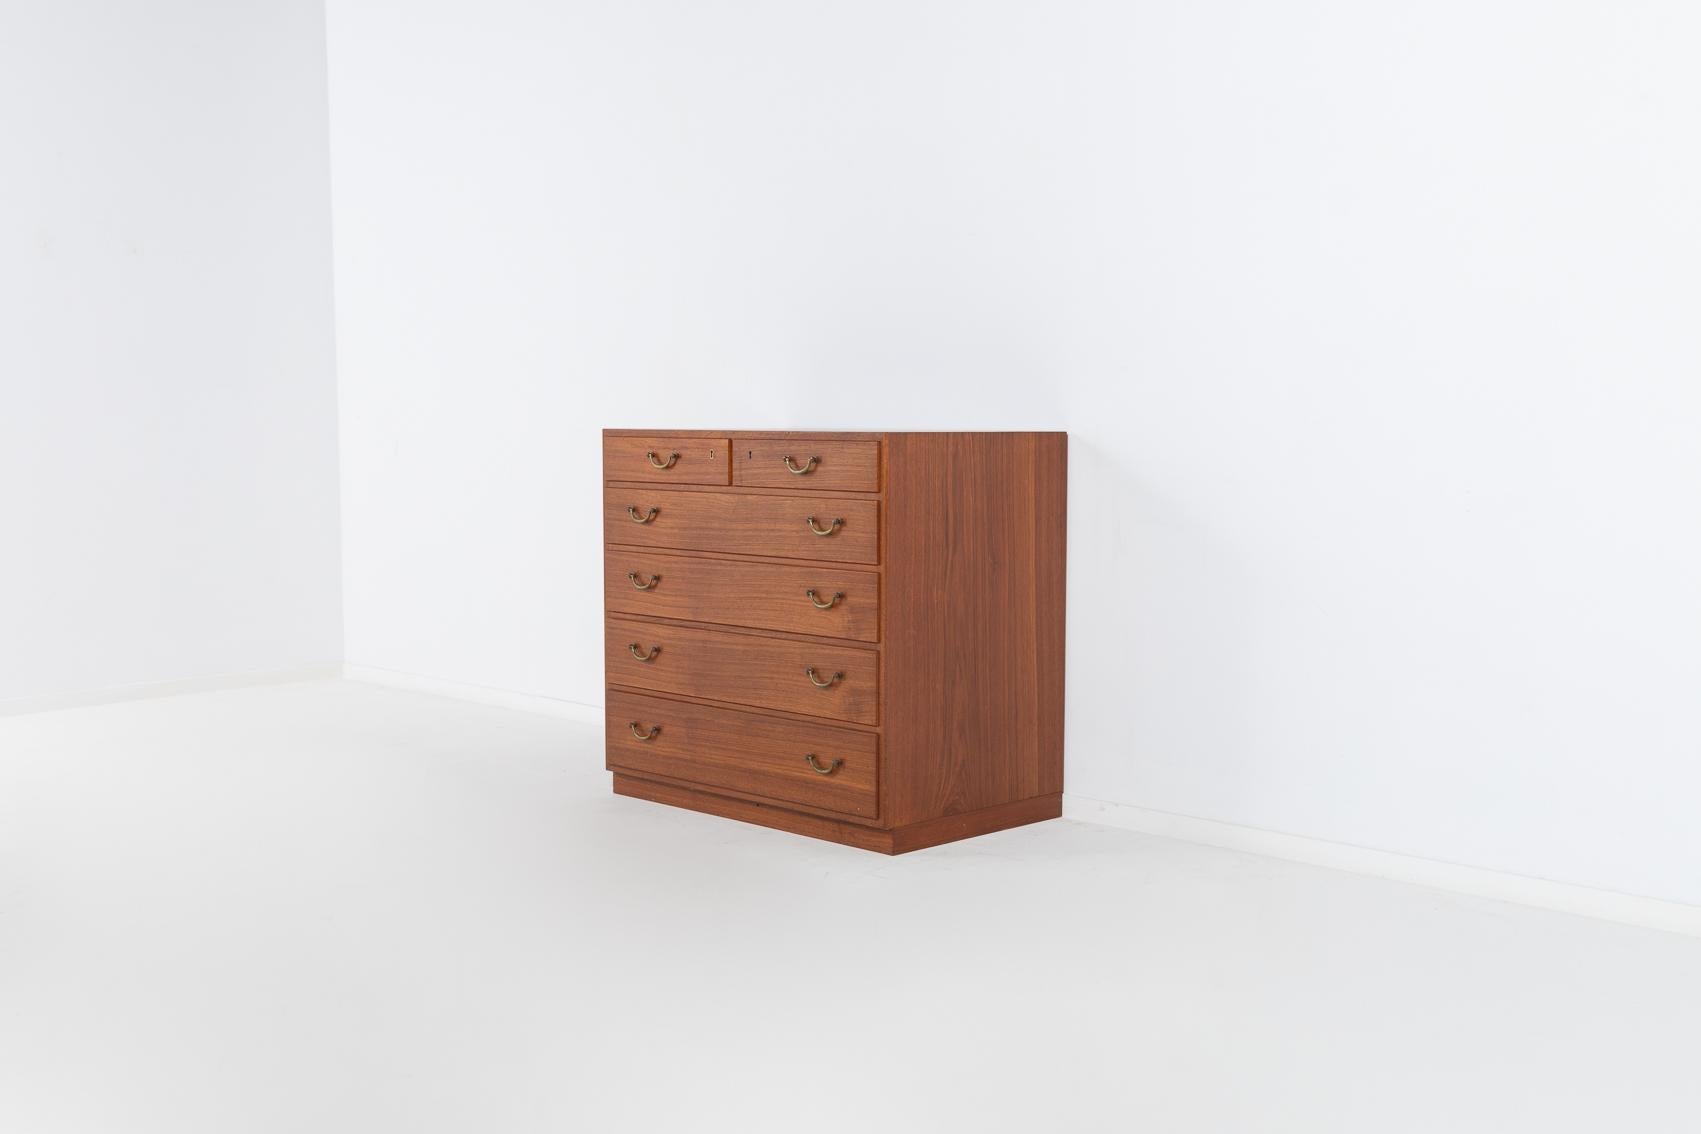 Rare set of 3 teak cabinets by Tove & Edvard Kindt-Larsen for Thorald Madsens For Sale 5